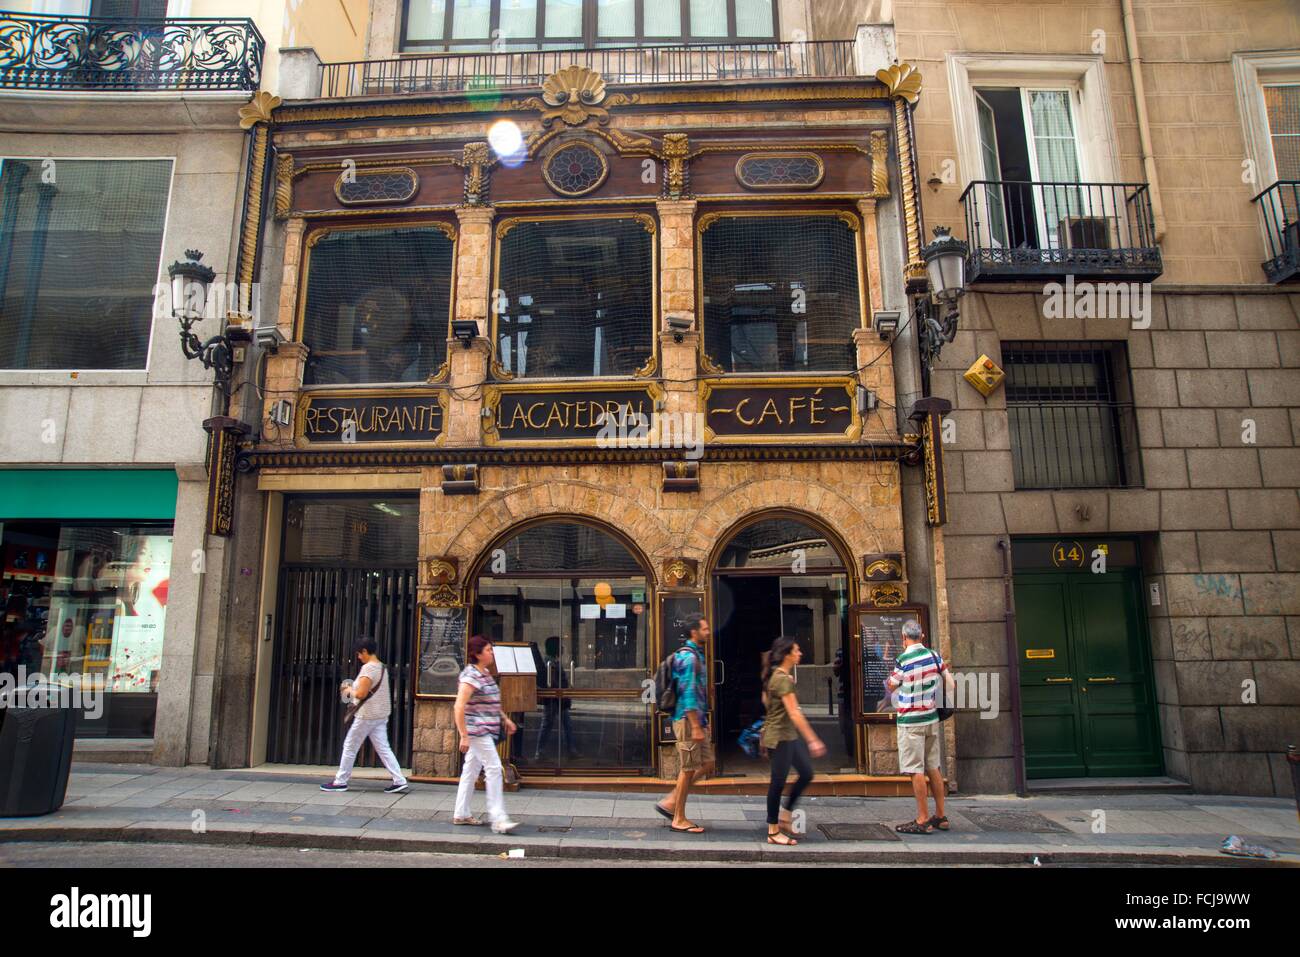 Fachada de la Catedral restaurante. Carrera de San Jeronimo, Madrid, España  Fotografía de stock - Alamy